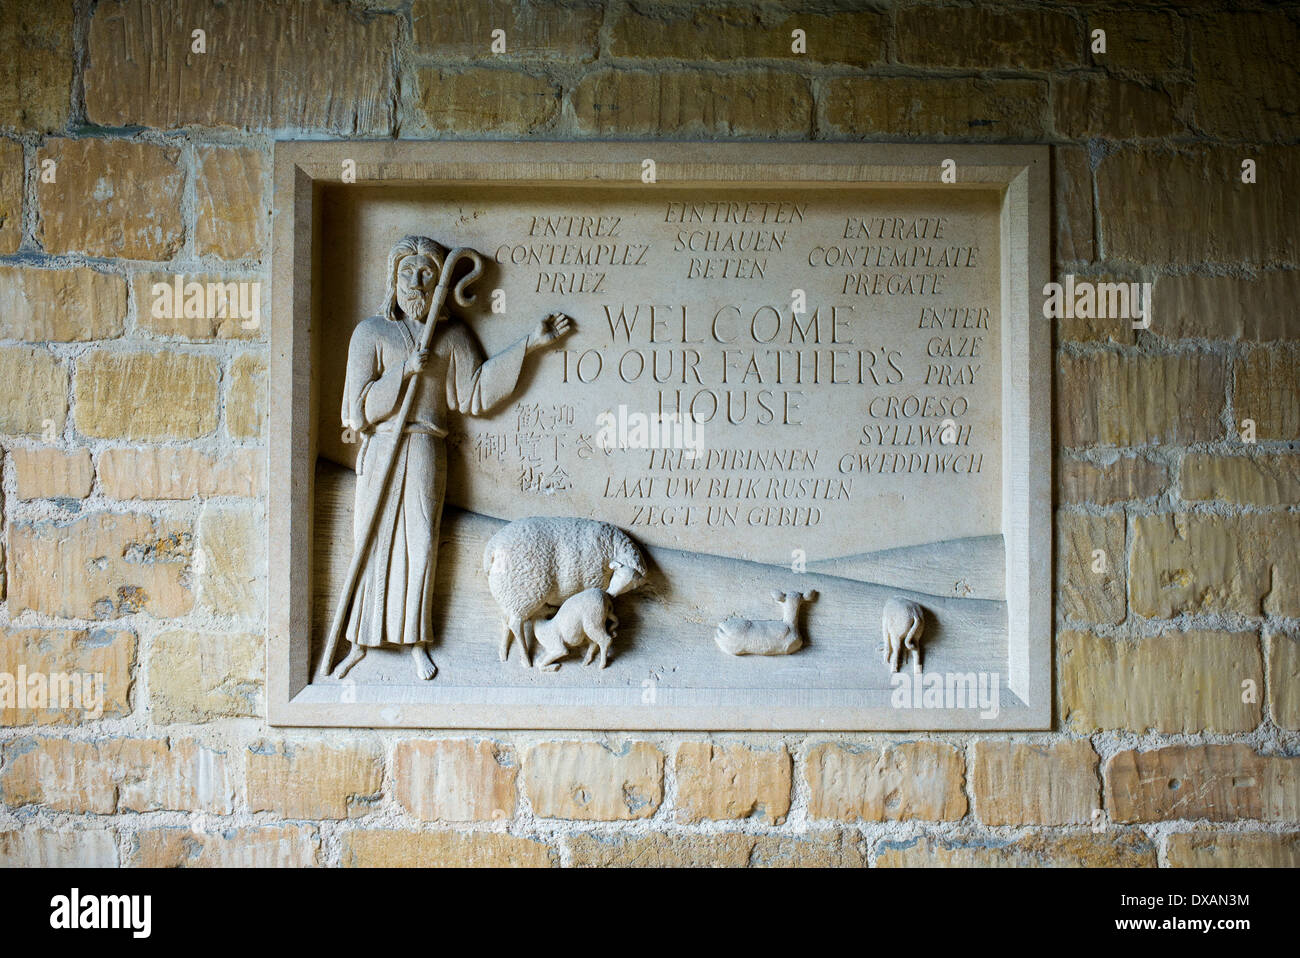 La sculpture sur pierre de l'église, bienvenue à nos pères house, Stow on the Wold, Gloucestershire, Cotswolds, en Angleterre Banque D'Images